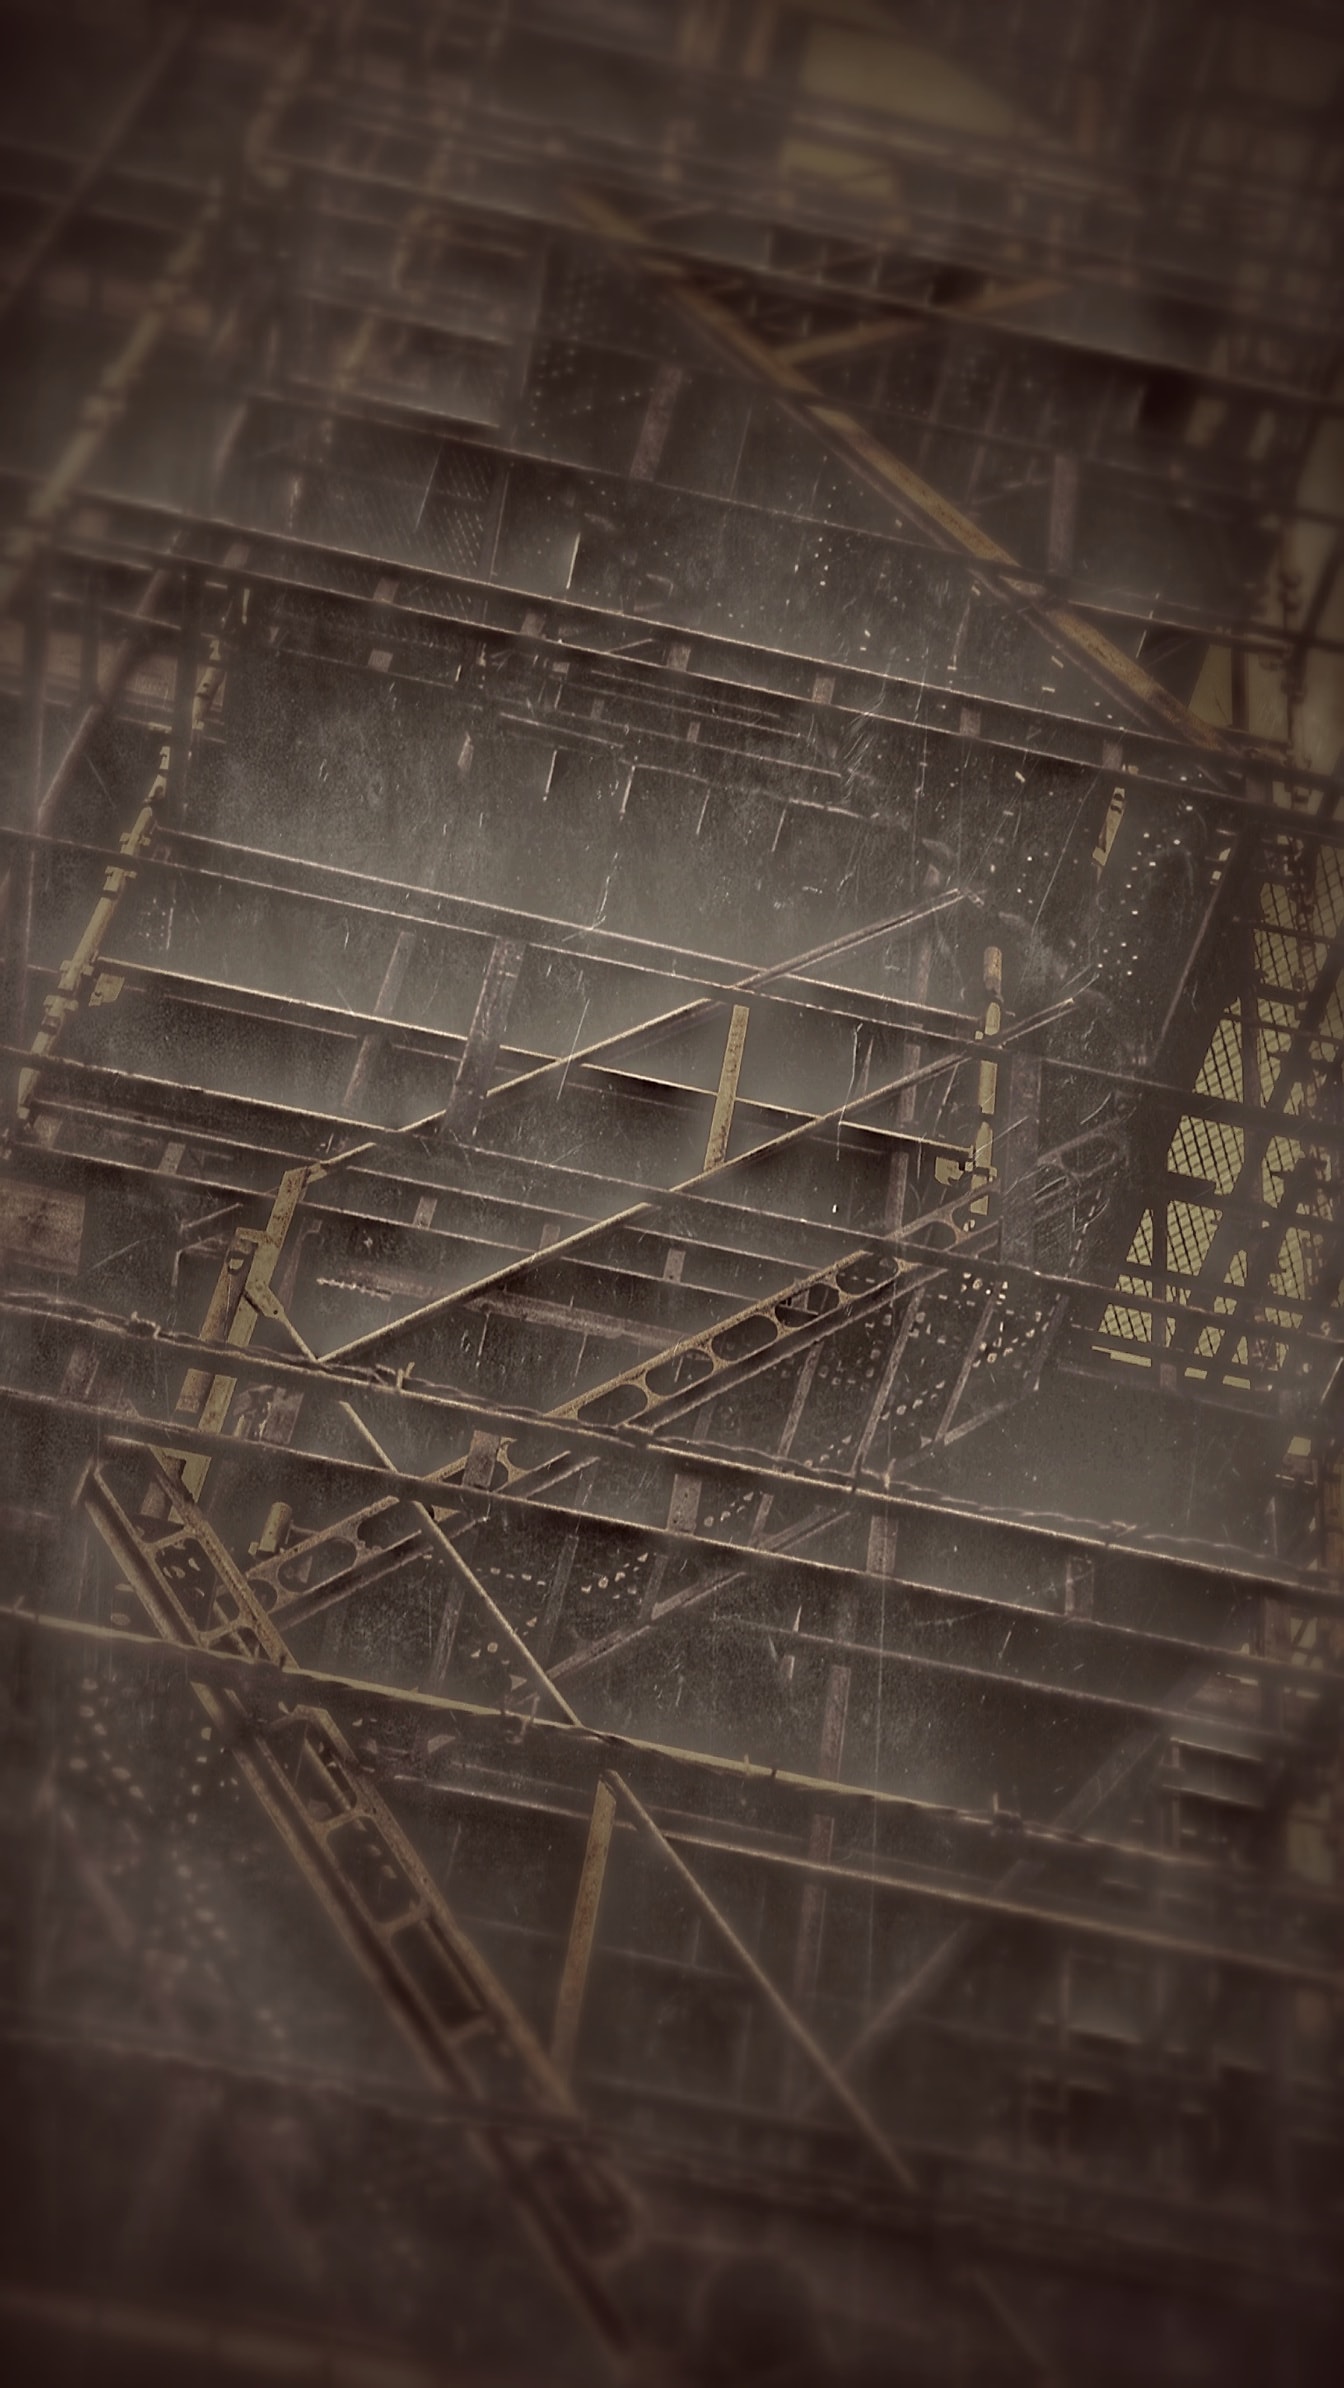 Inspirováno Alexejem Titarenkem: ocelové schody na sépiové fotografii budovy